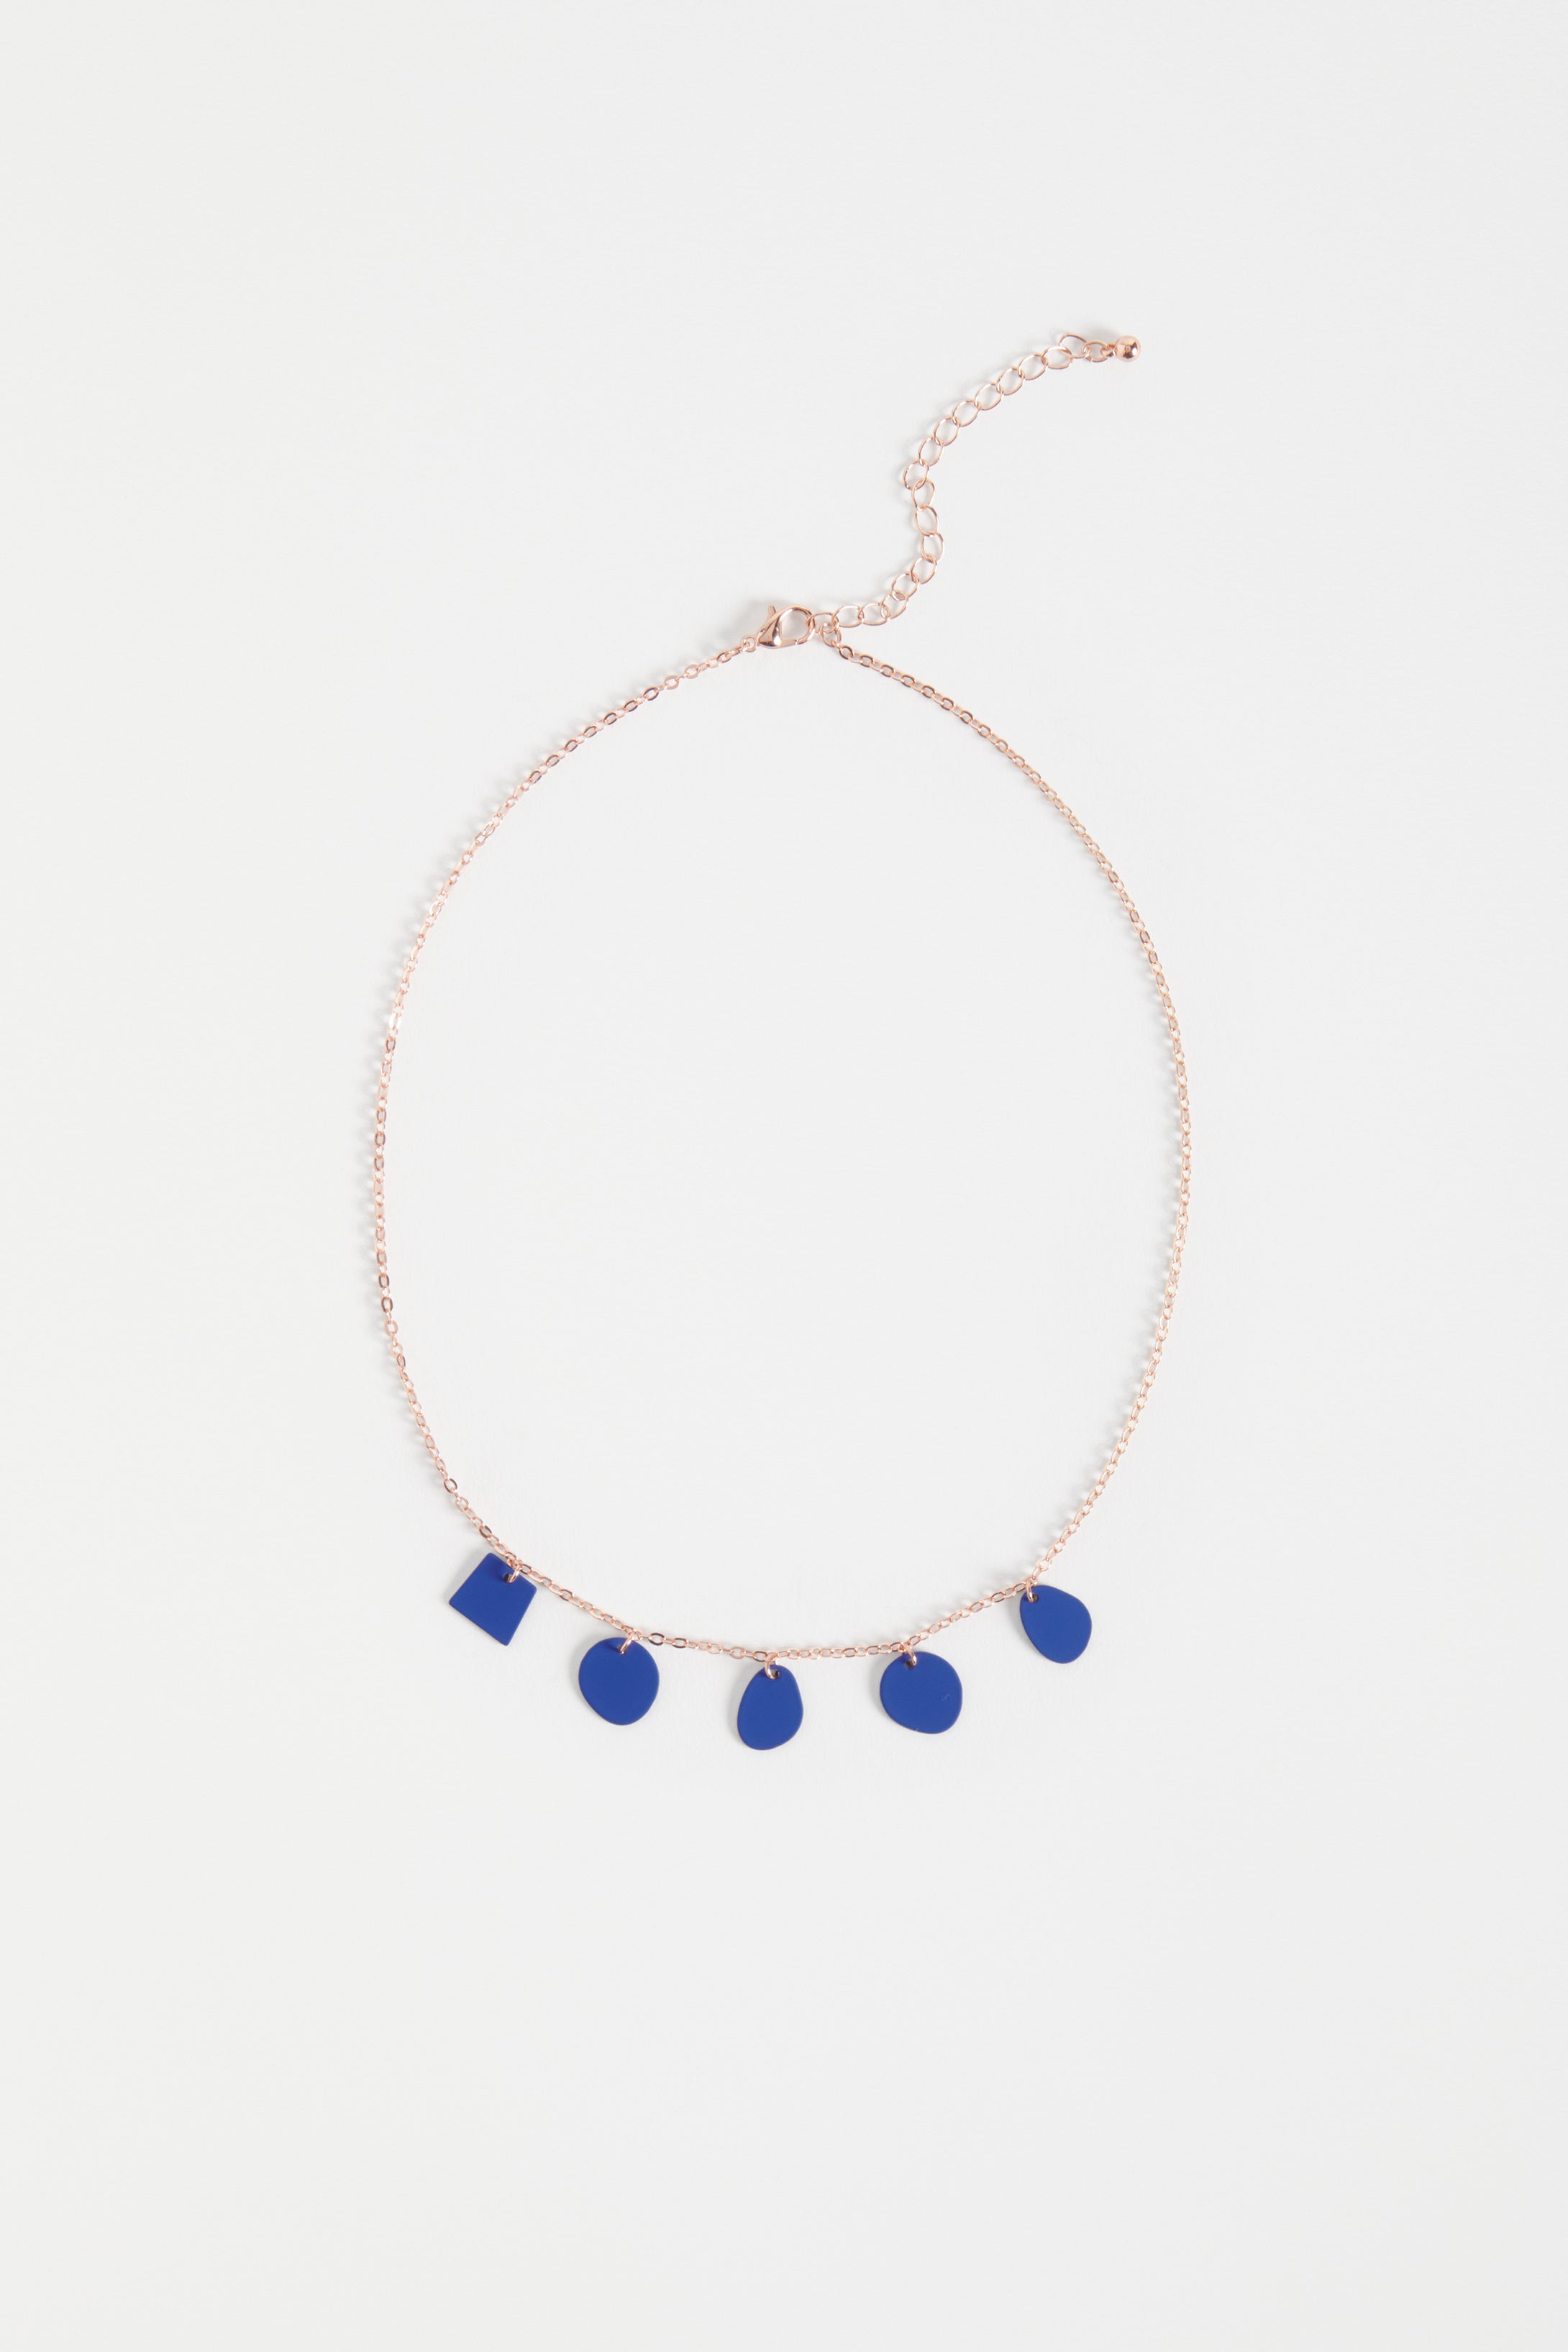 Sammi Fine Chain and small disc pendants Necklace | ULTRAMARINE